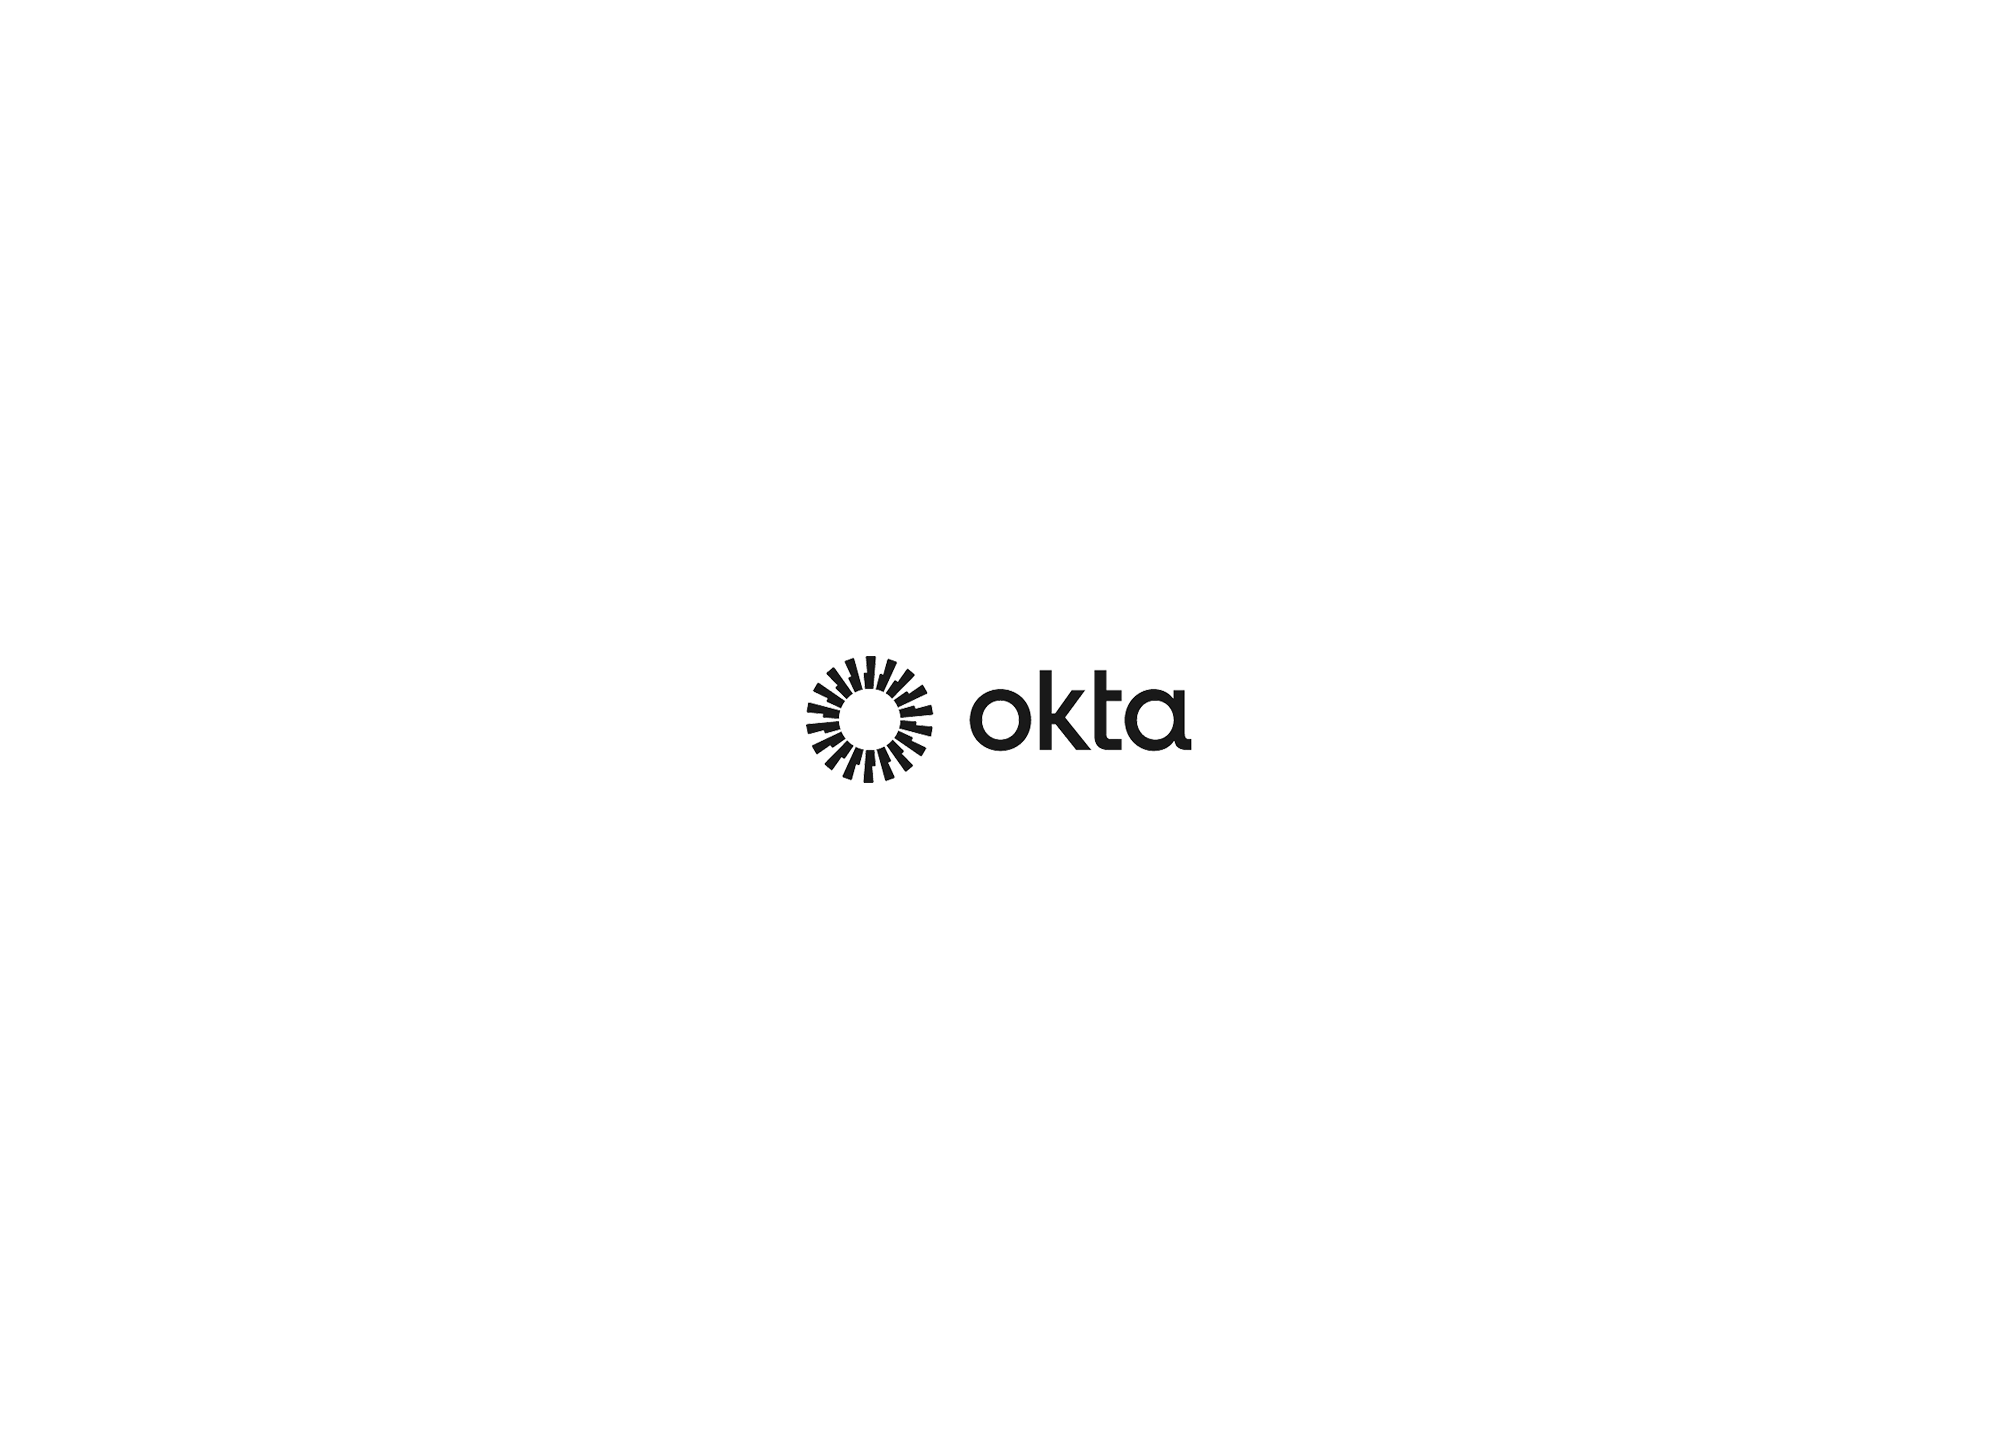 Ockta-BW-new